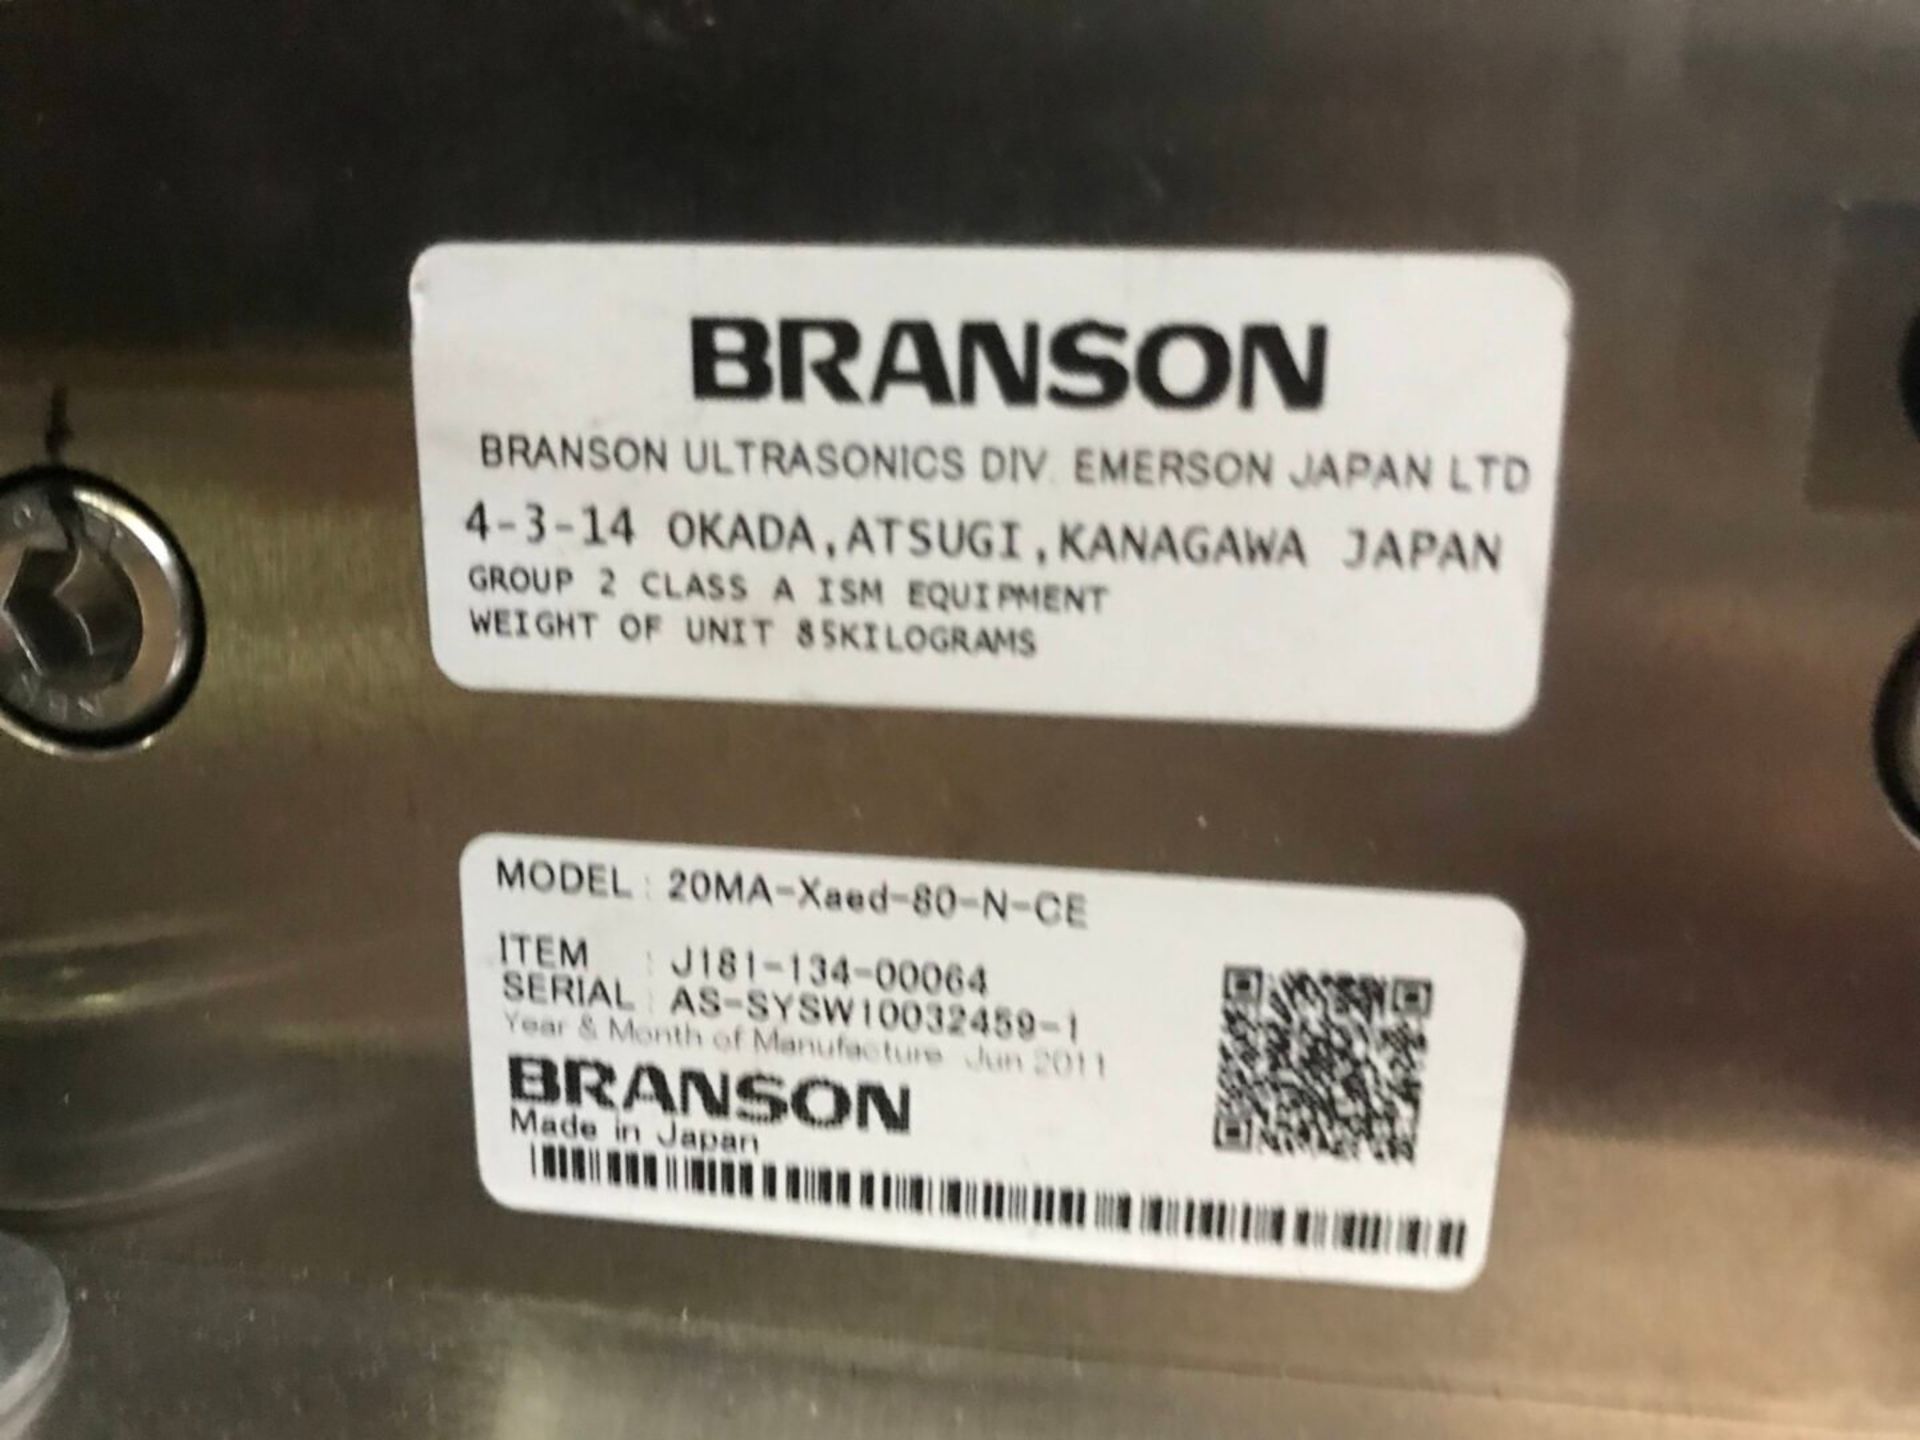 Branson Ultrasonic Welder 20MA-Xaed-80-N-CE - Image 7 of 8